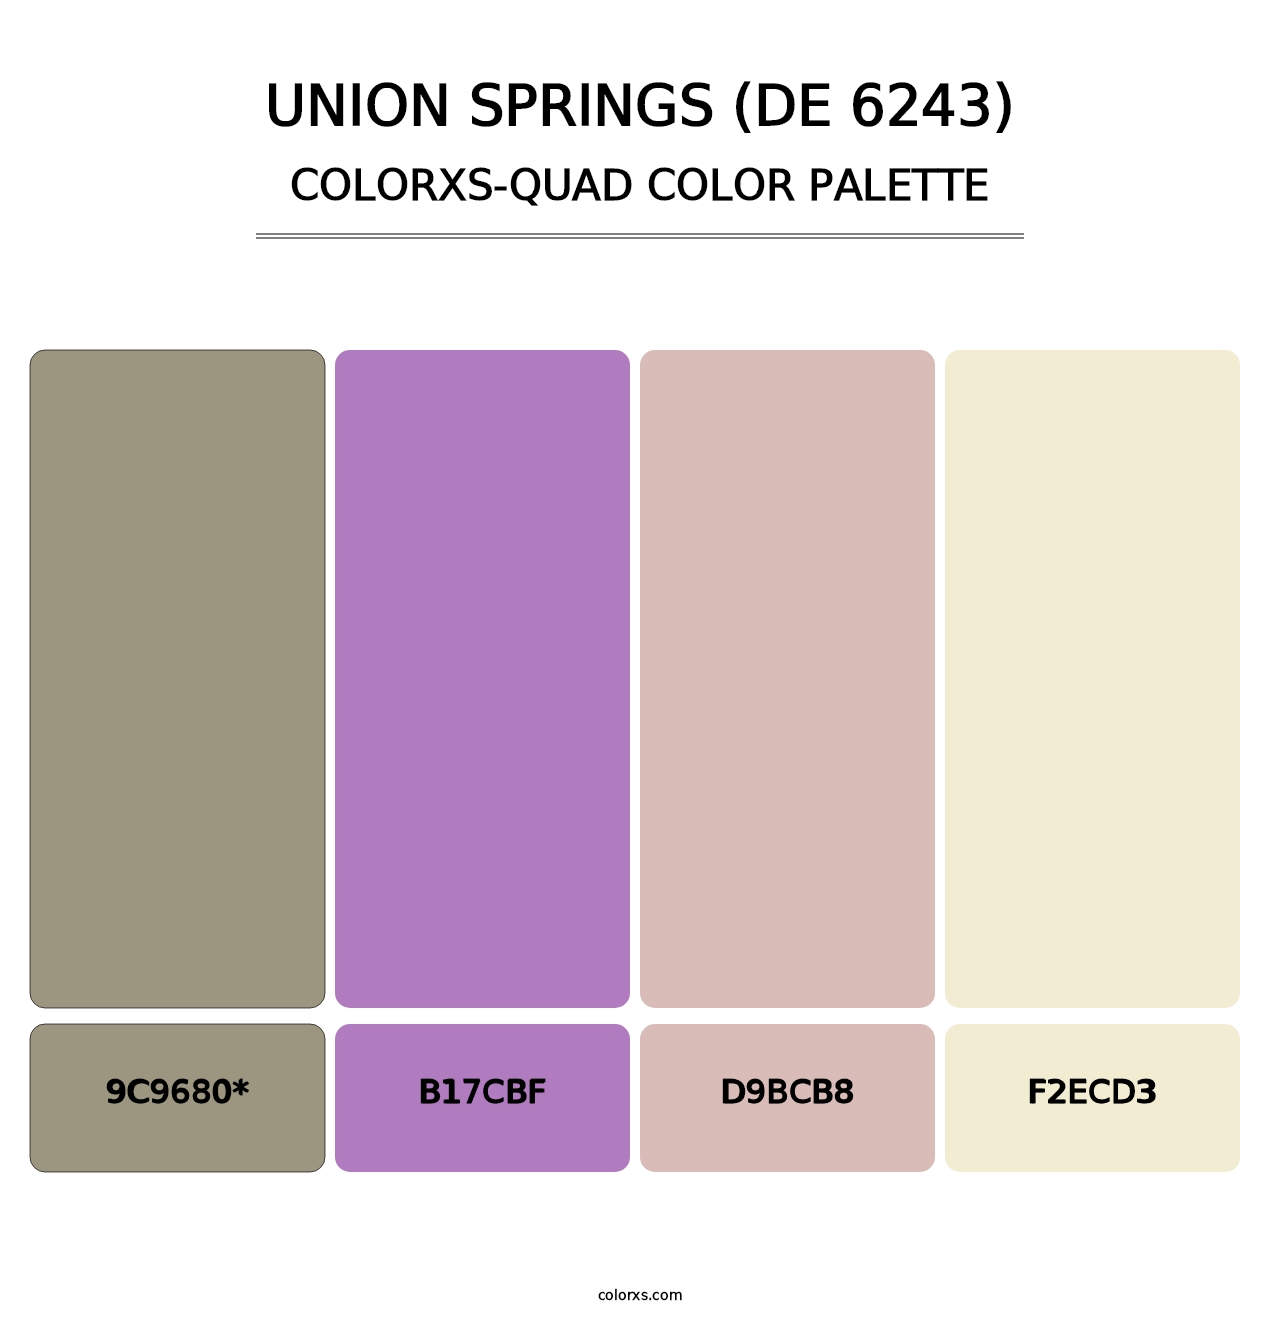 Union Springs (DE 6243) - Colorxs Quad Palette